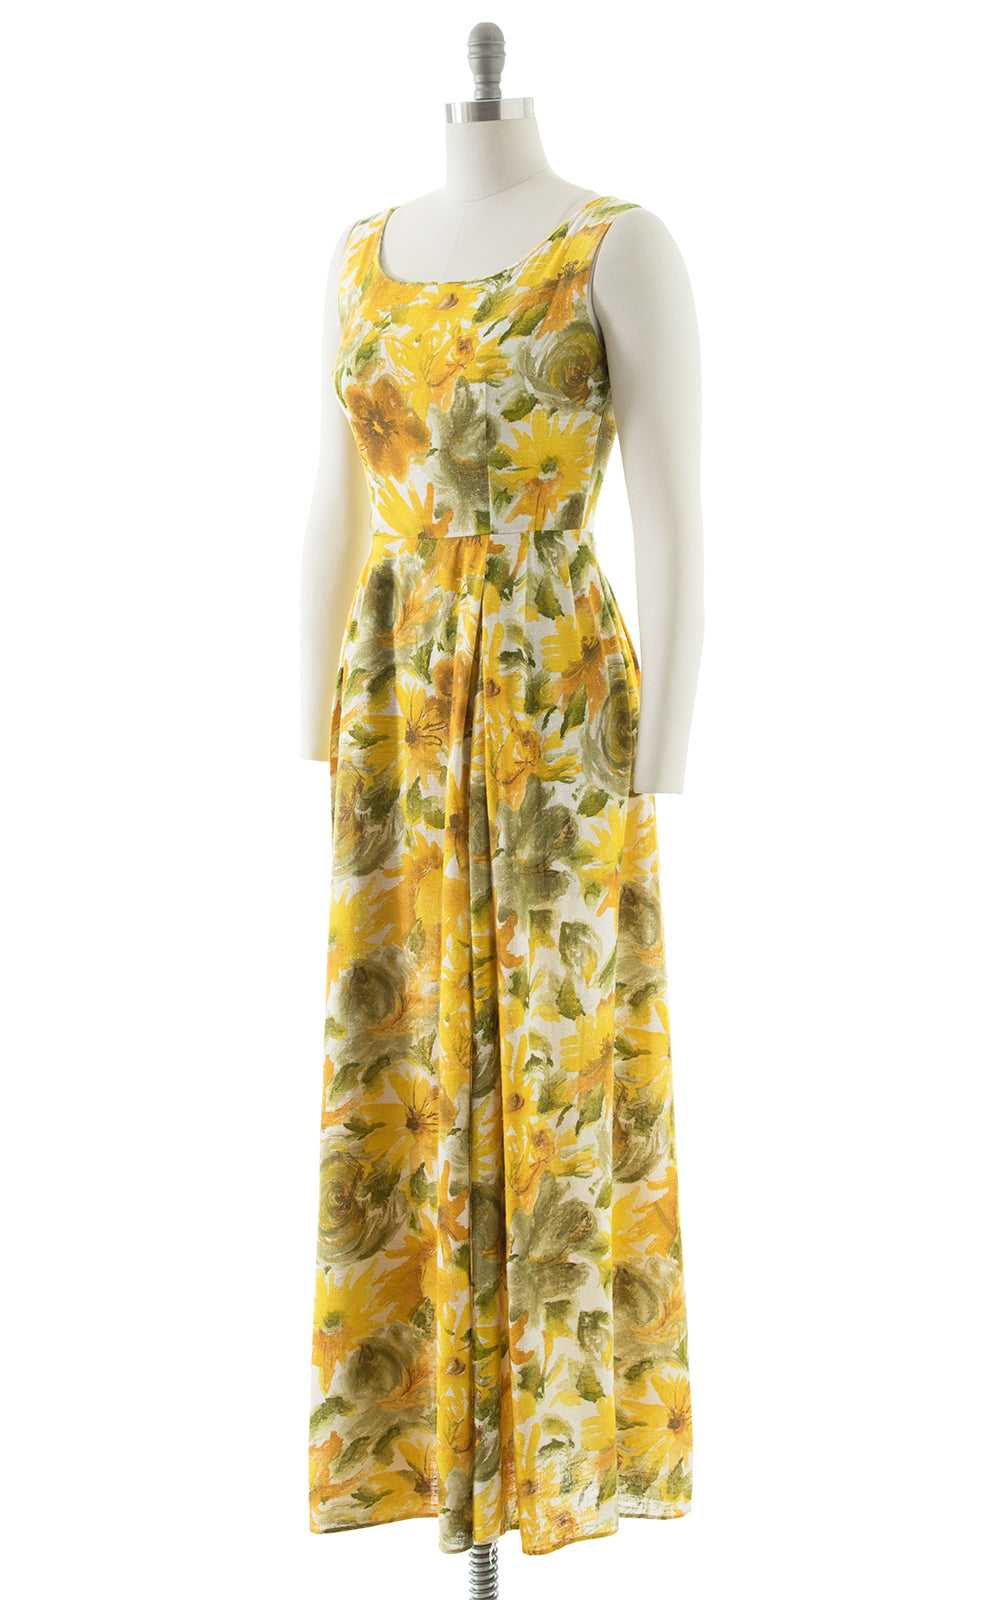 $65 DRESS SALE /// 1960s 1970s Yellow Floral Cott… - image 3